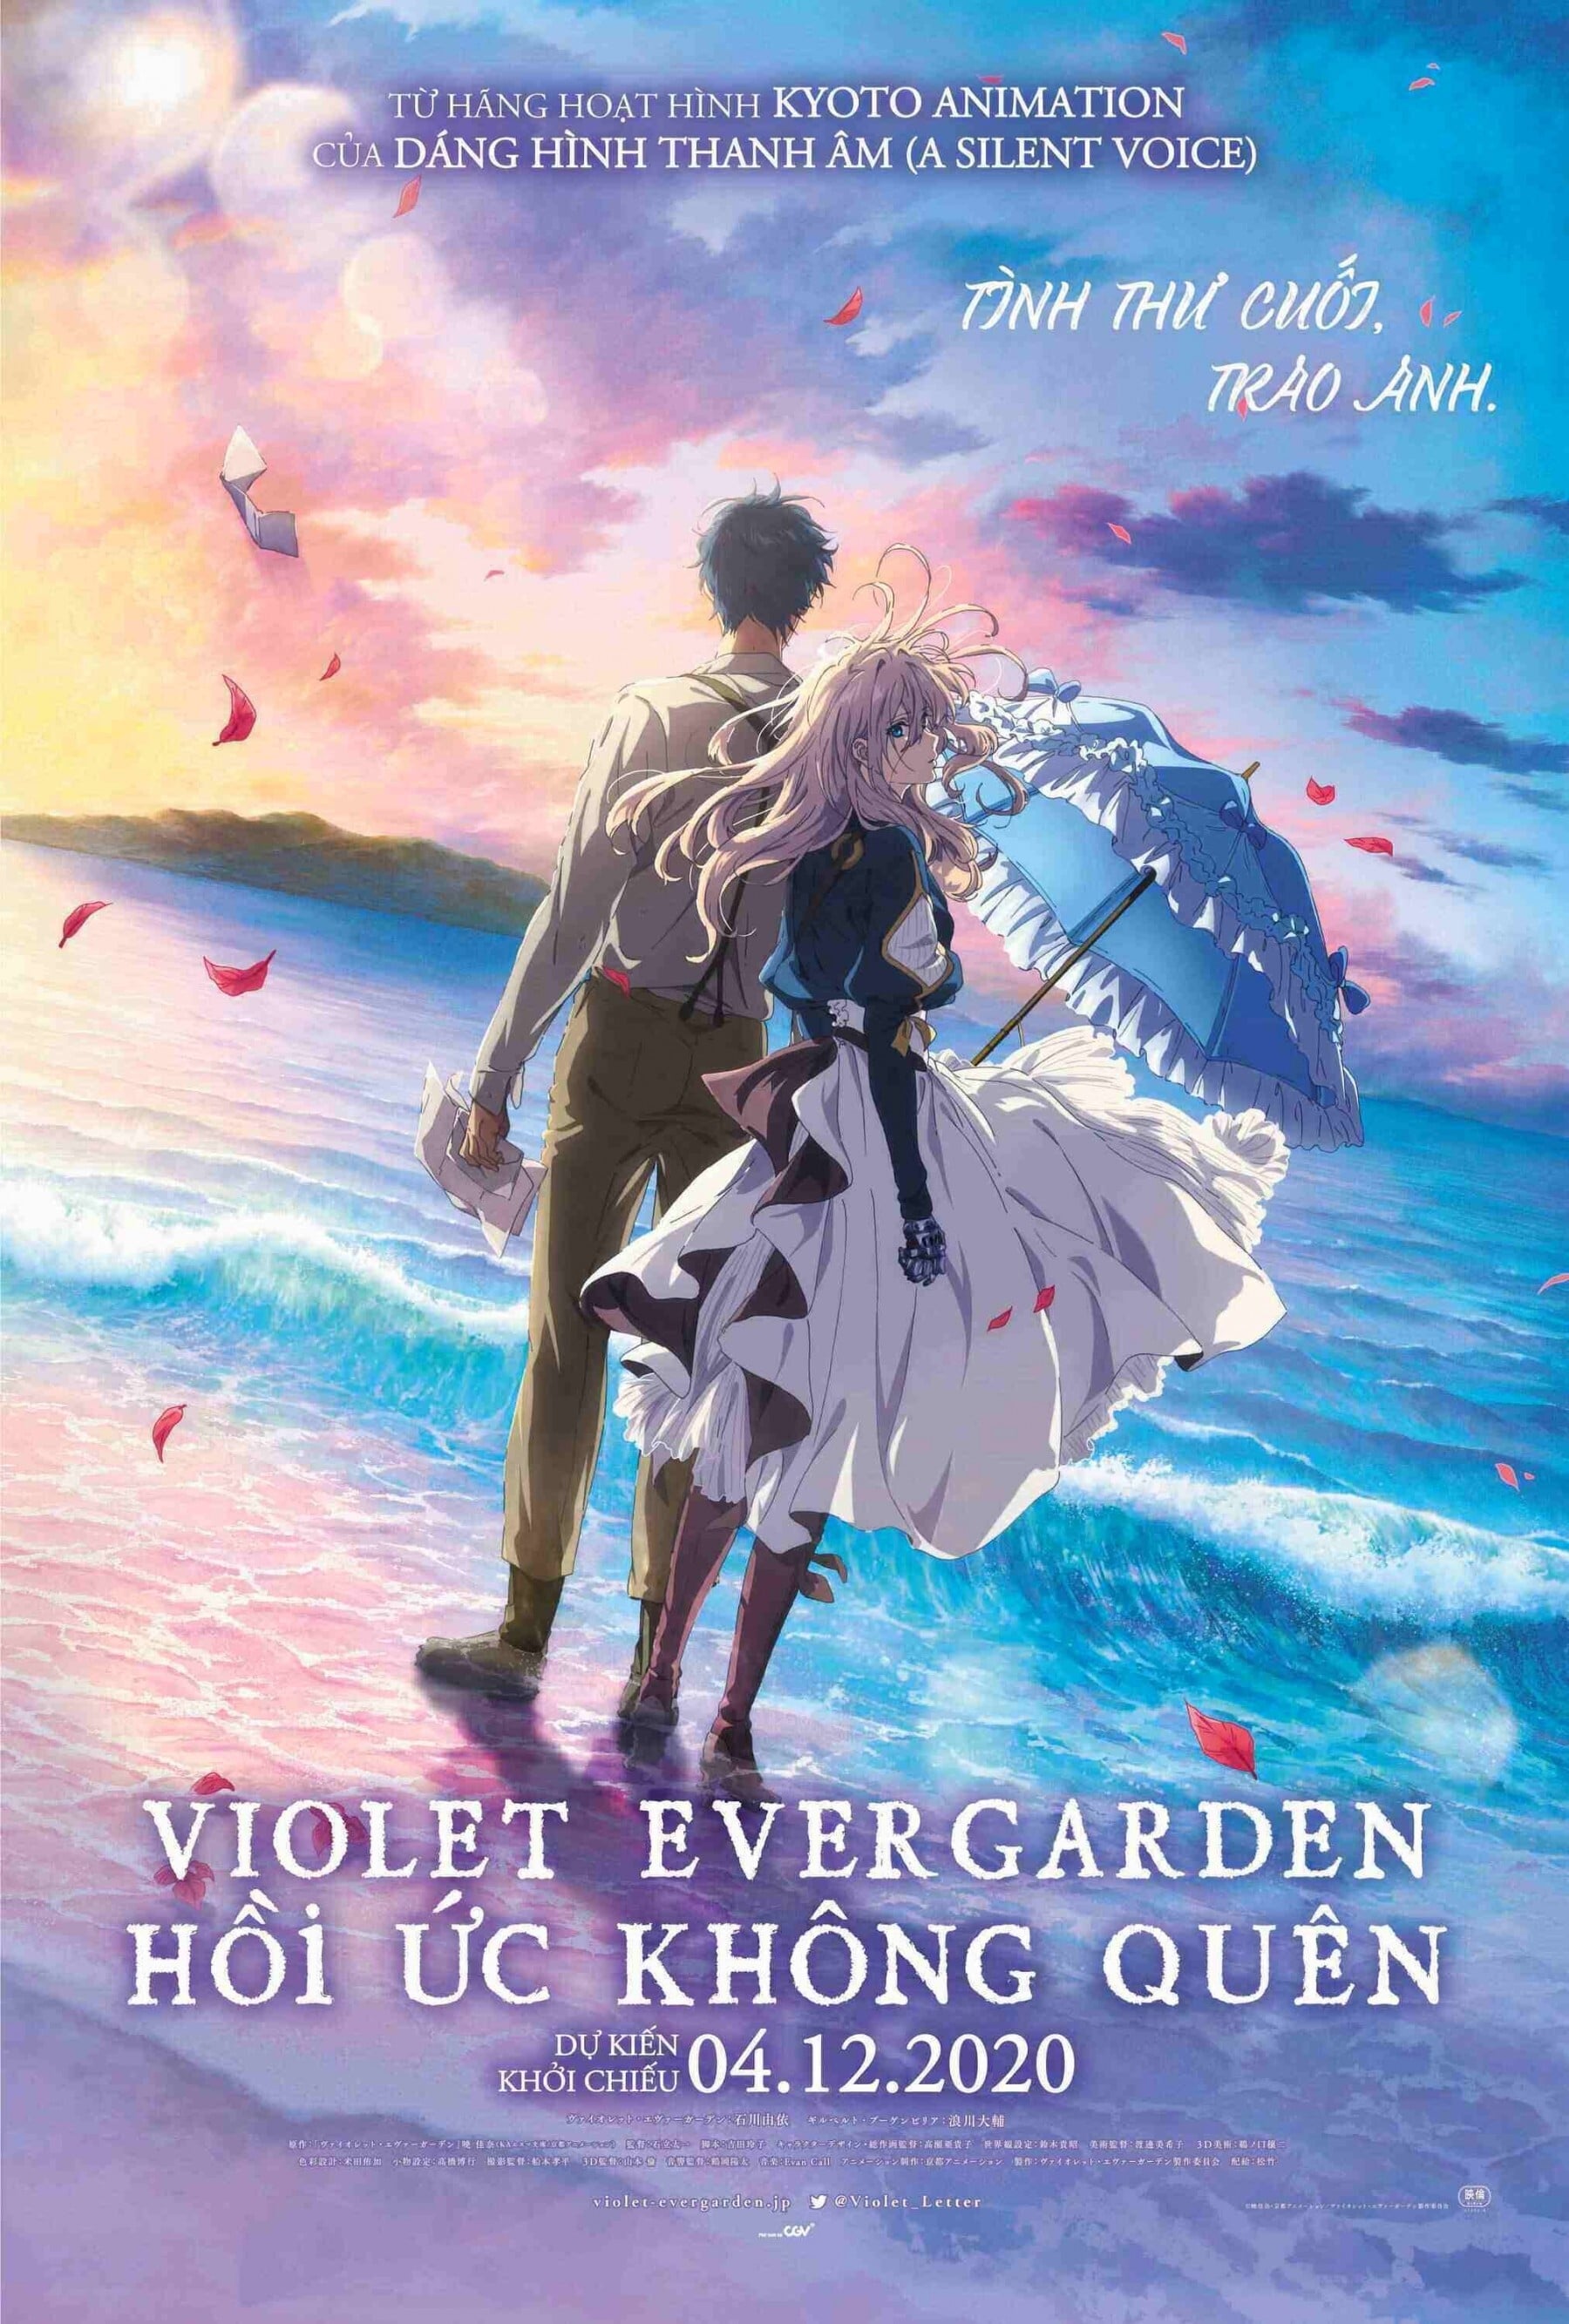 Violet Evergarden: Hồi Ức Không Quên (Violet Evergarden the Movie) [2020]